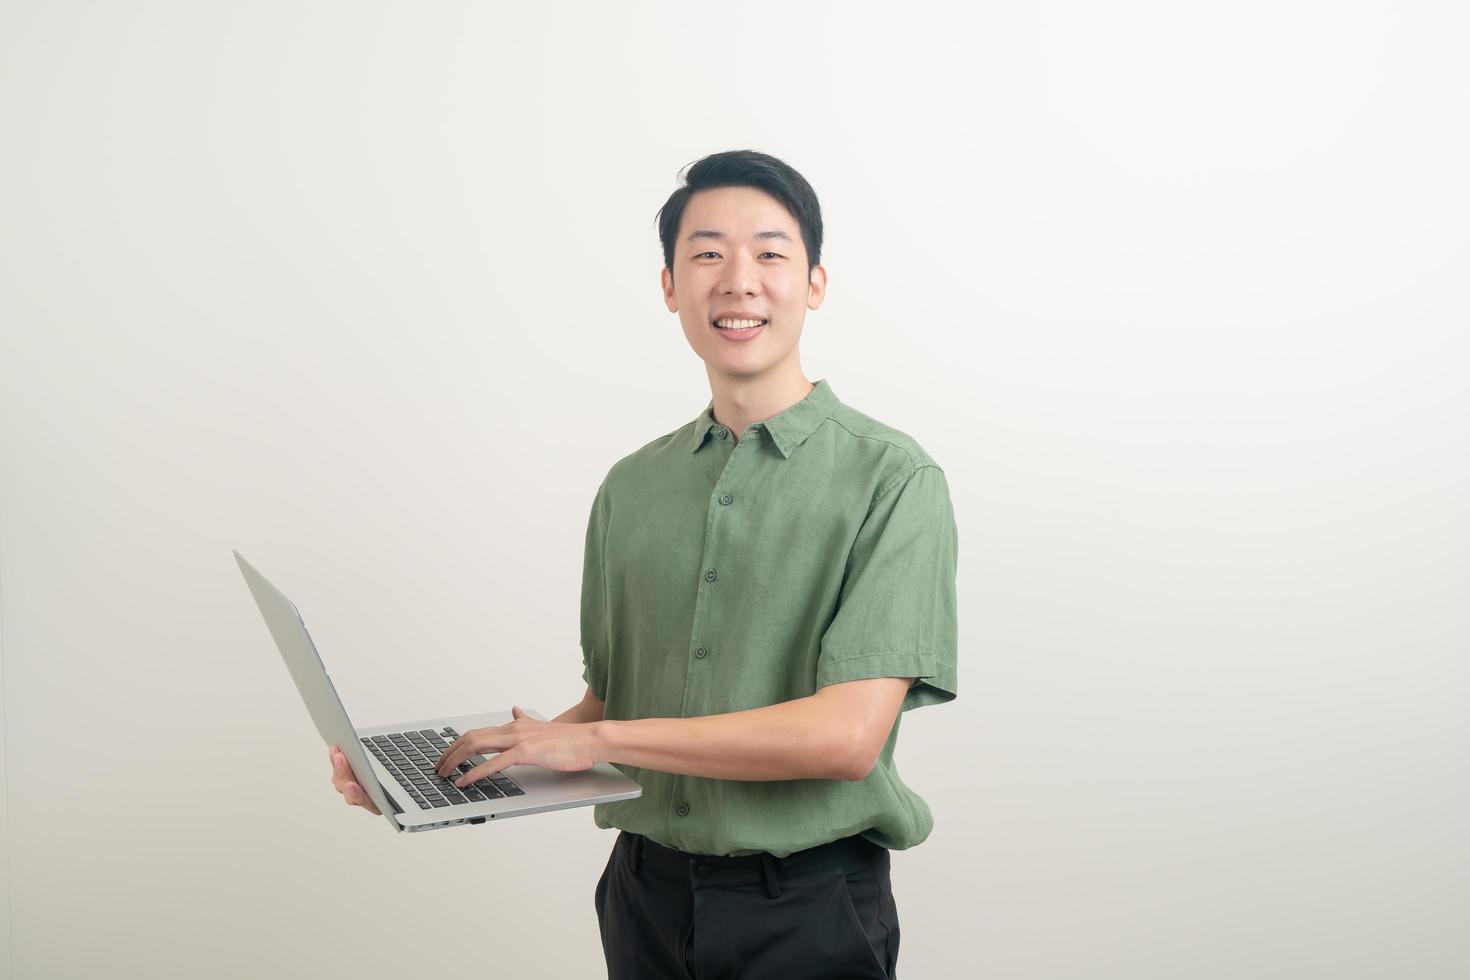 junger asiatischer Mann mit Laptop zur Hand foto